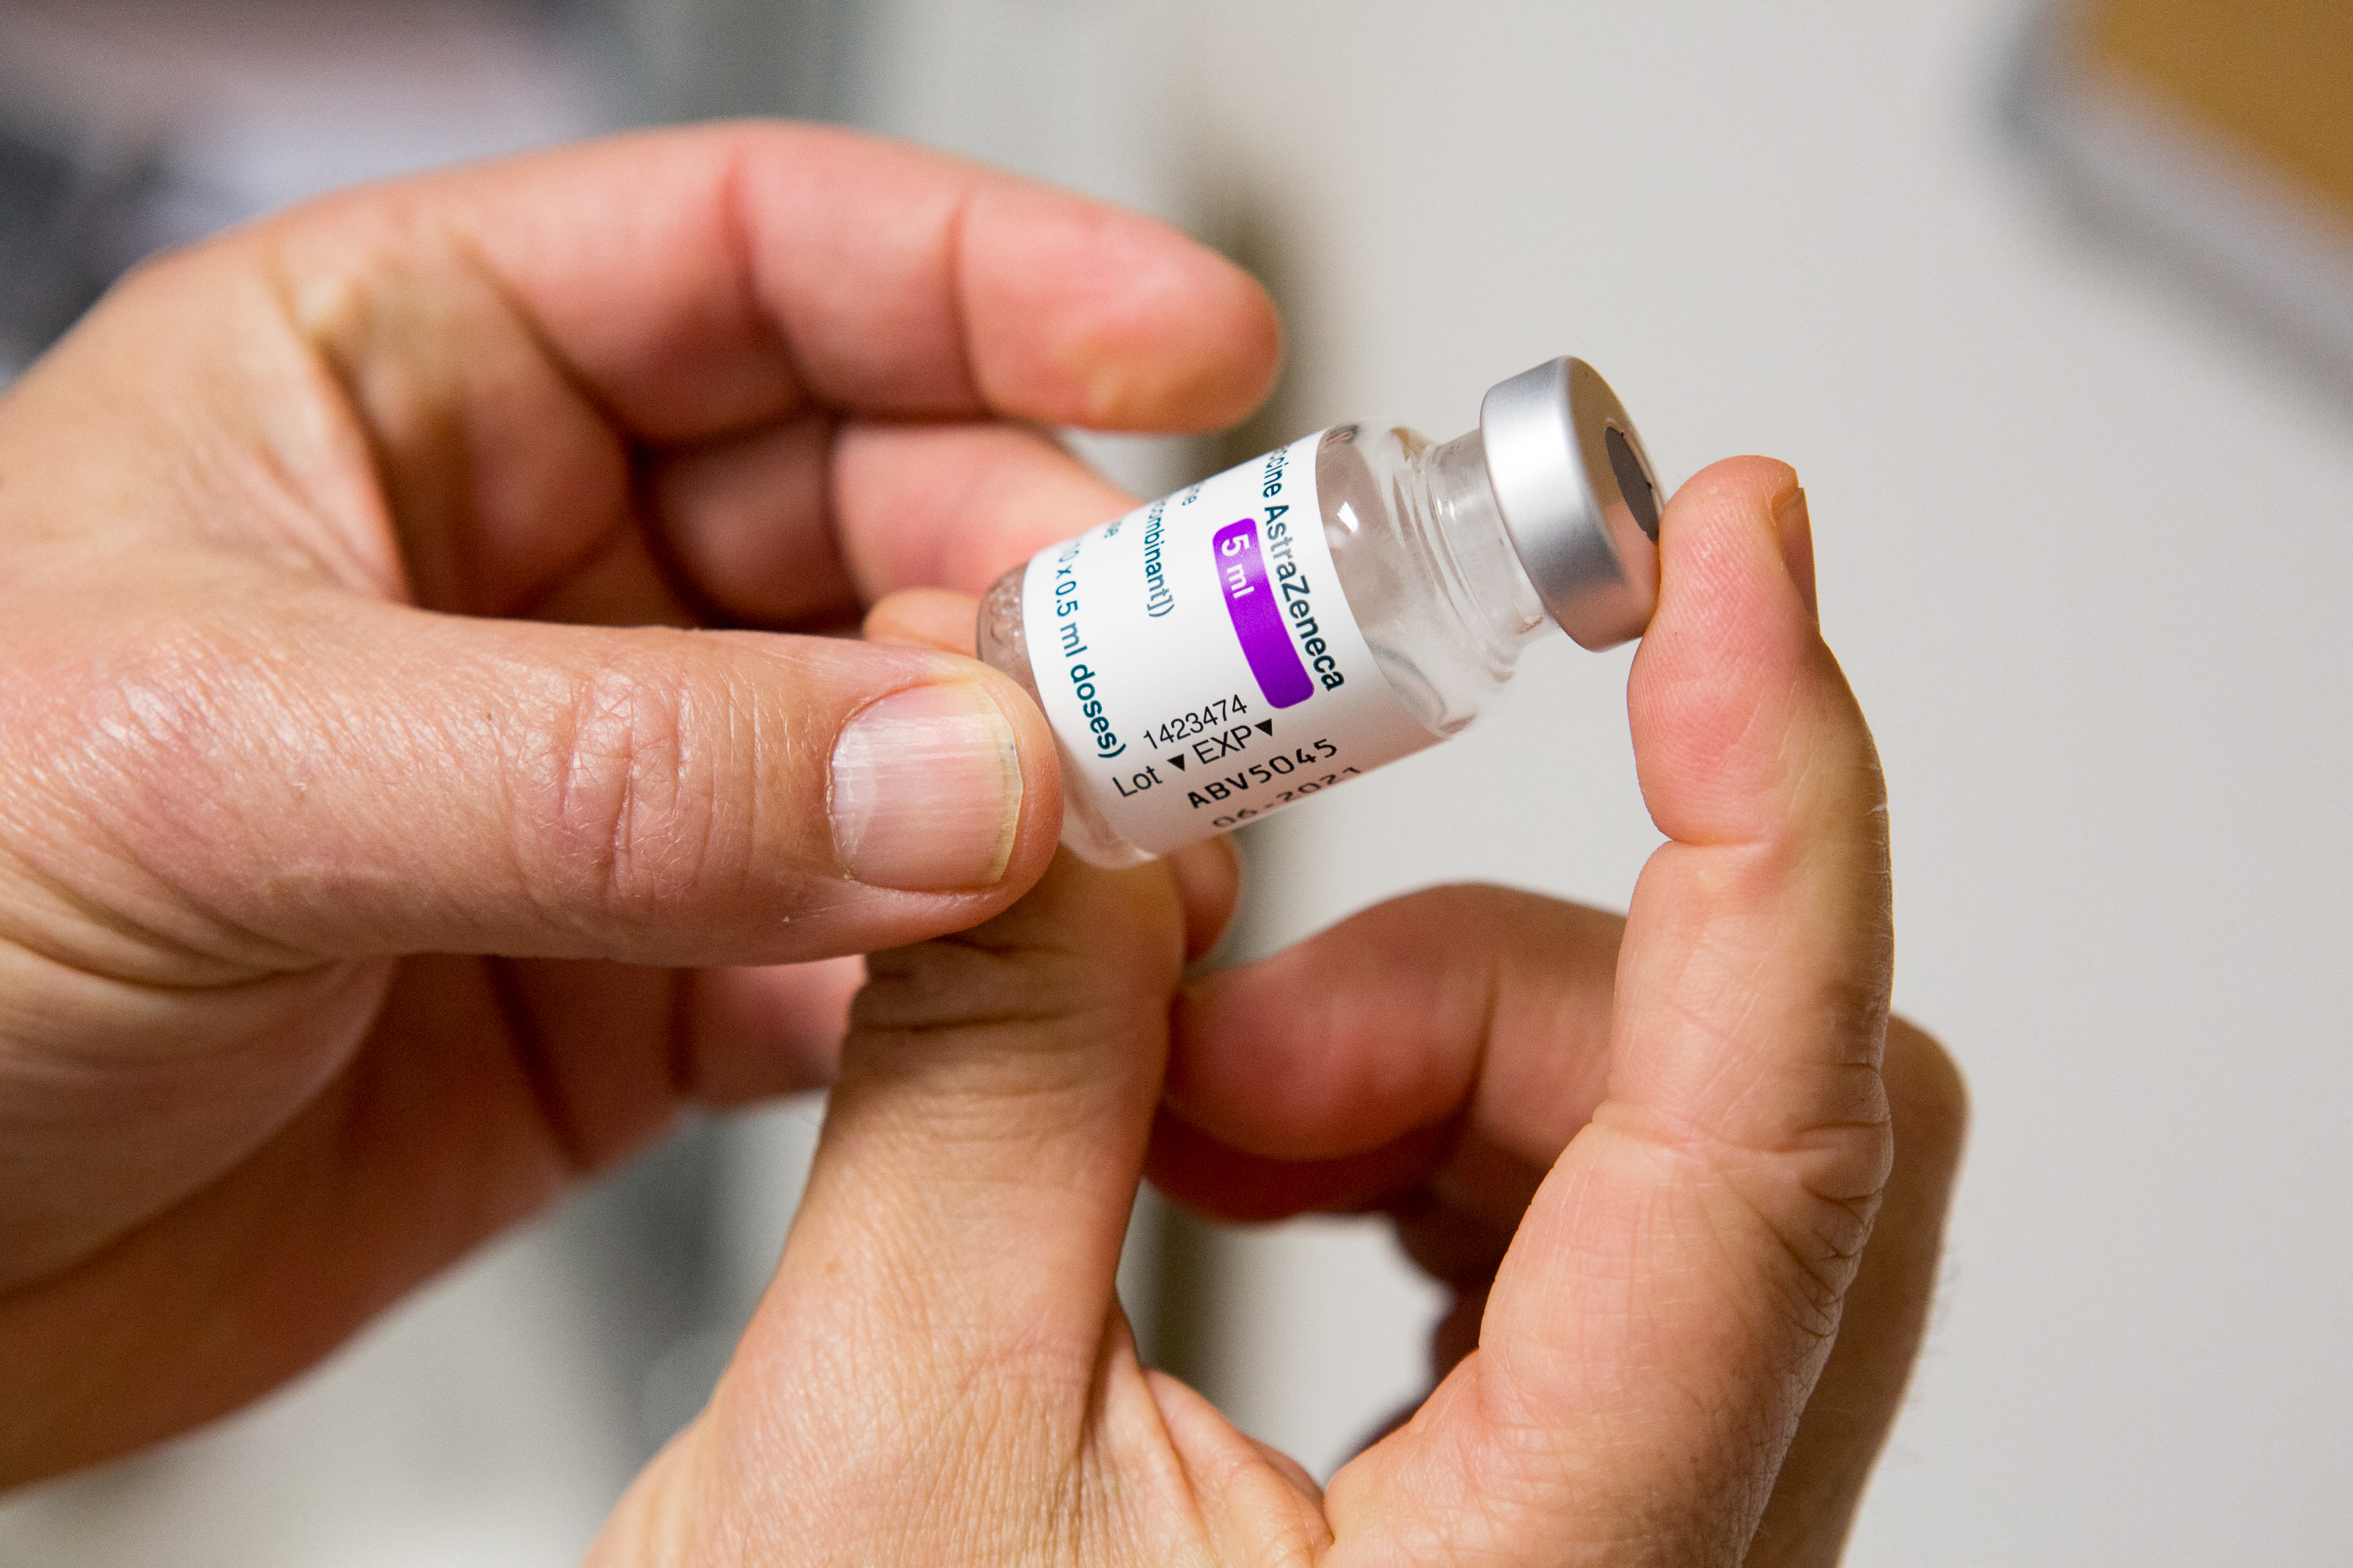 Vacinas da Pfizer e AstraZeneca 'muito eficazes' contra hospitalização de idosos, afirma Londres | Mundo: Diario de Pernambuco